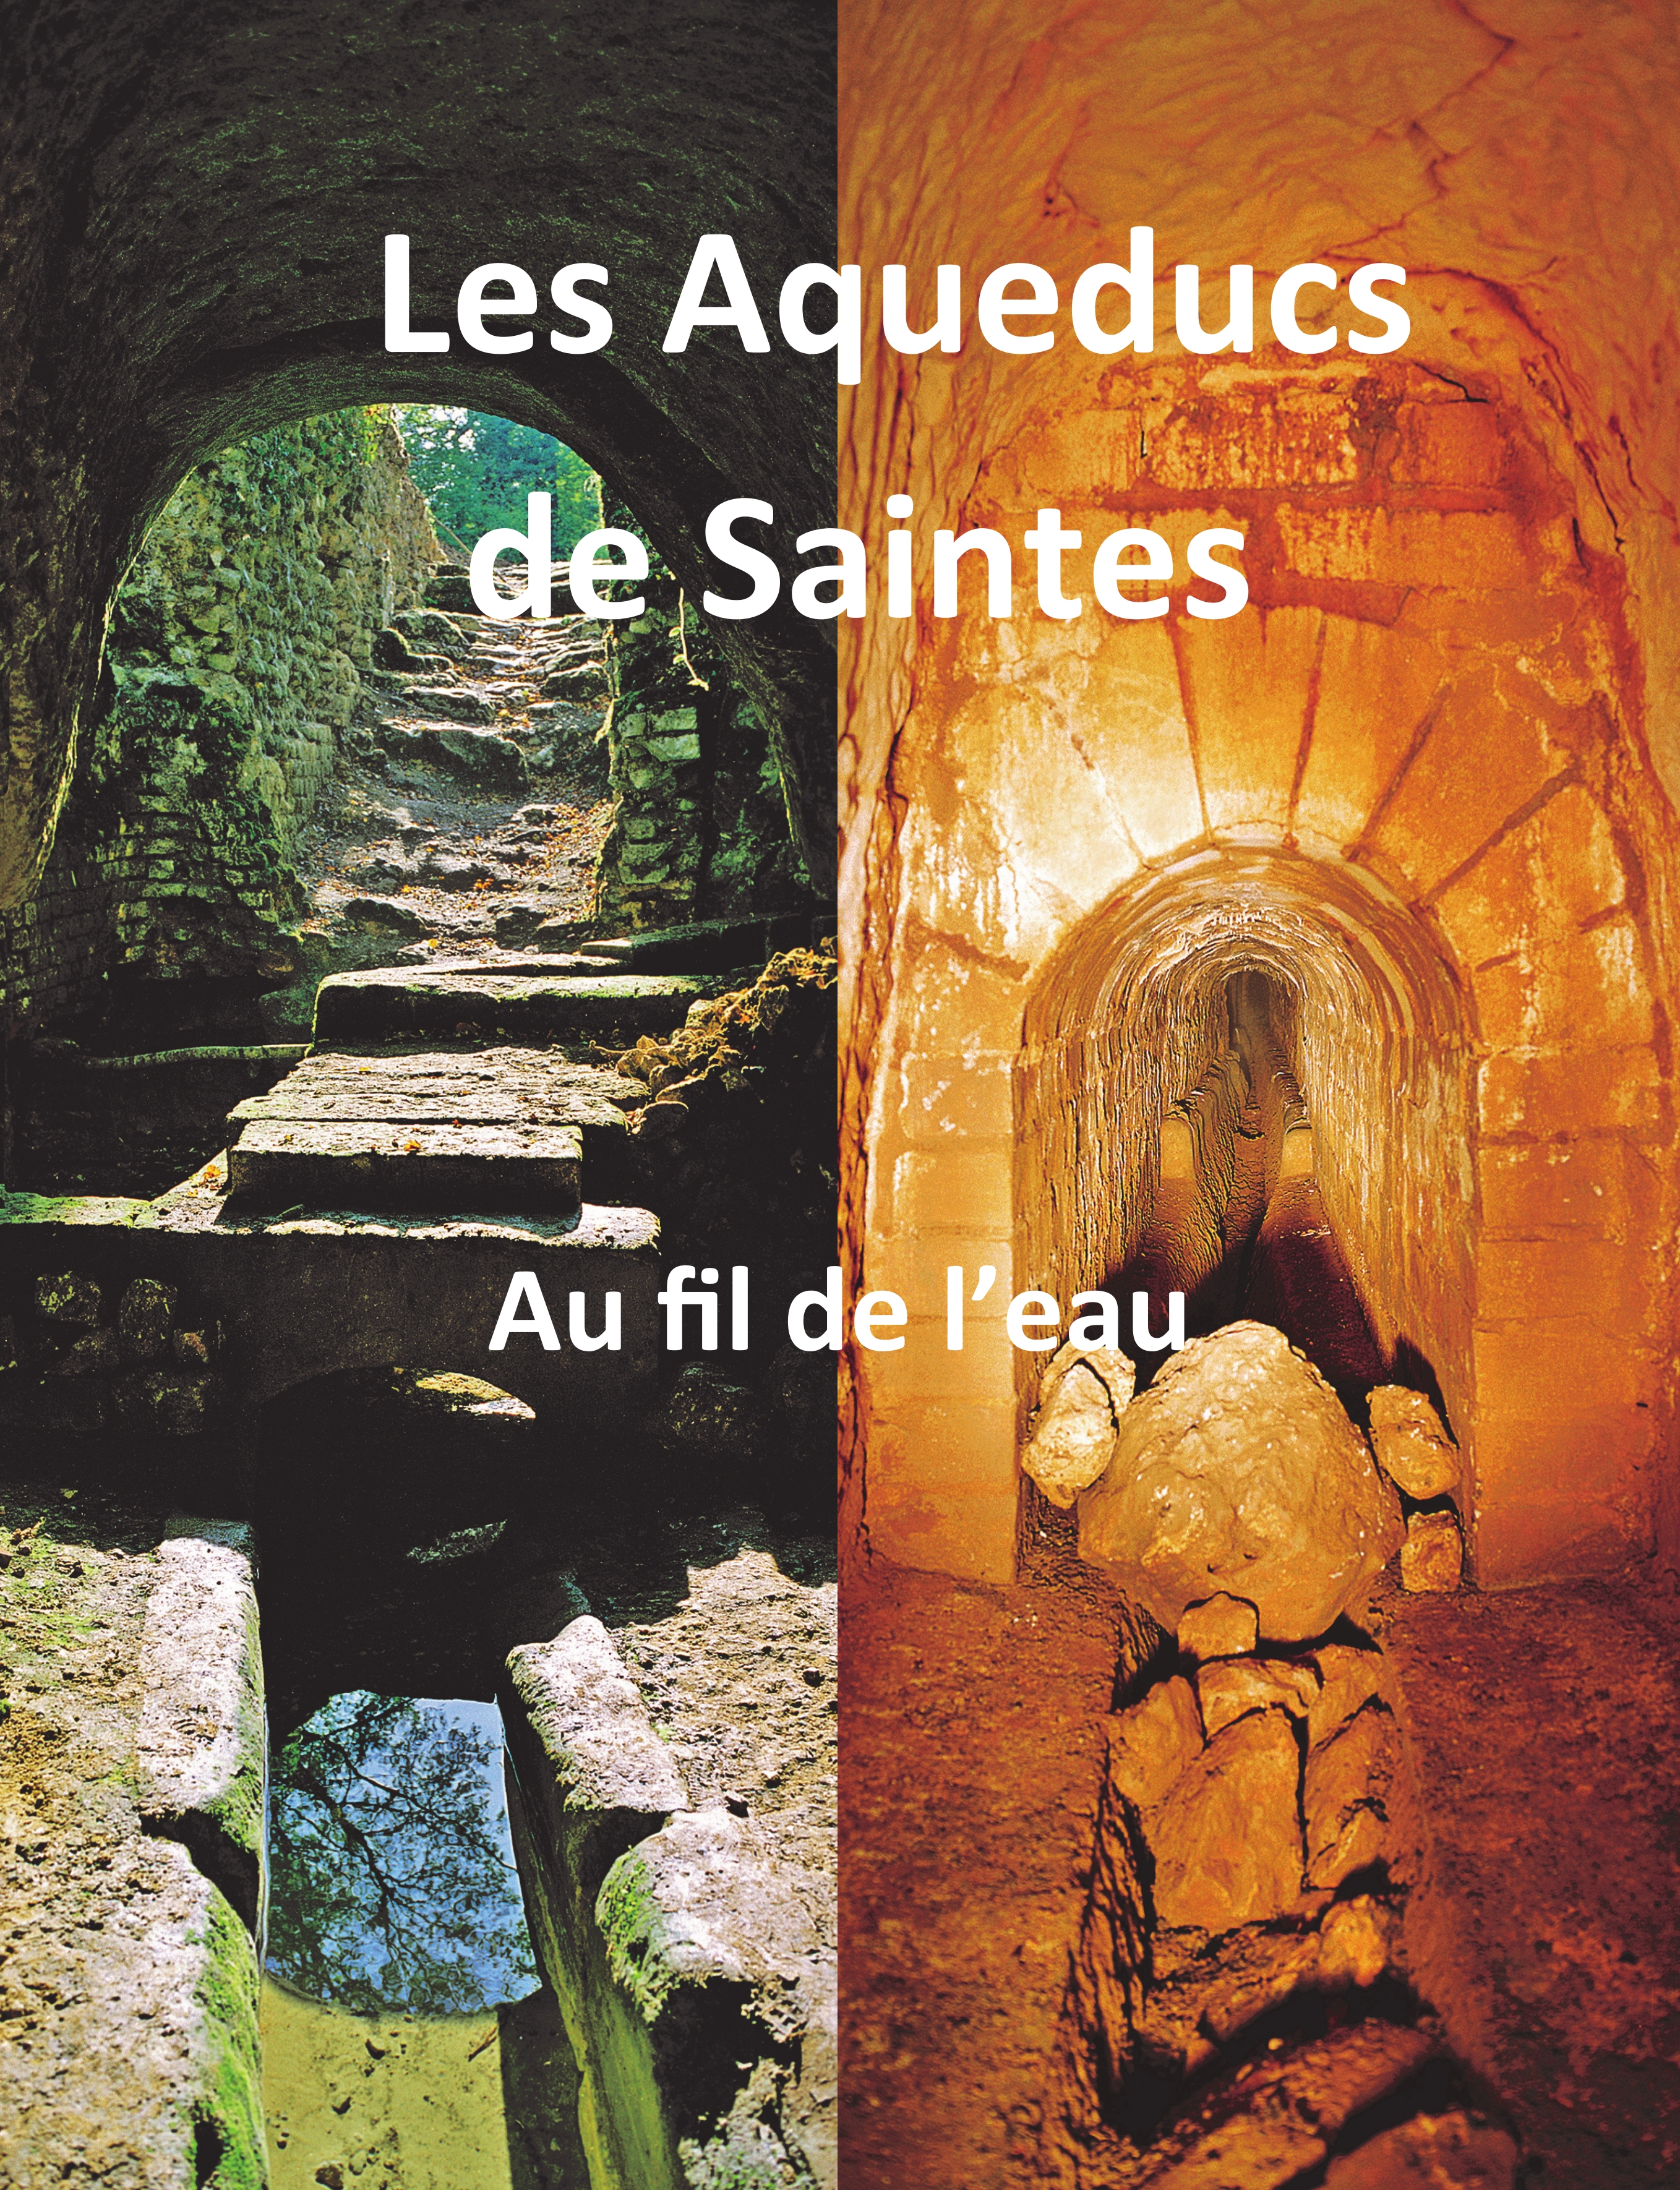 « Les aqueducs de Saintes, au fil de l’eau », Jean-Louis Hillairet, 2017, 40€